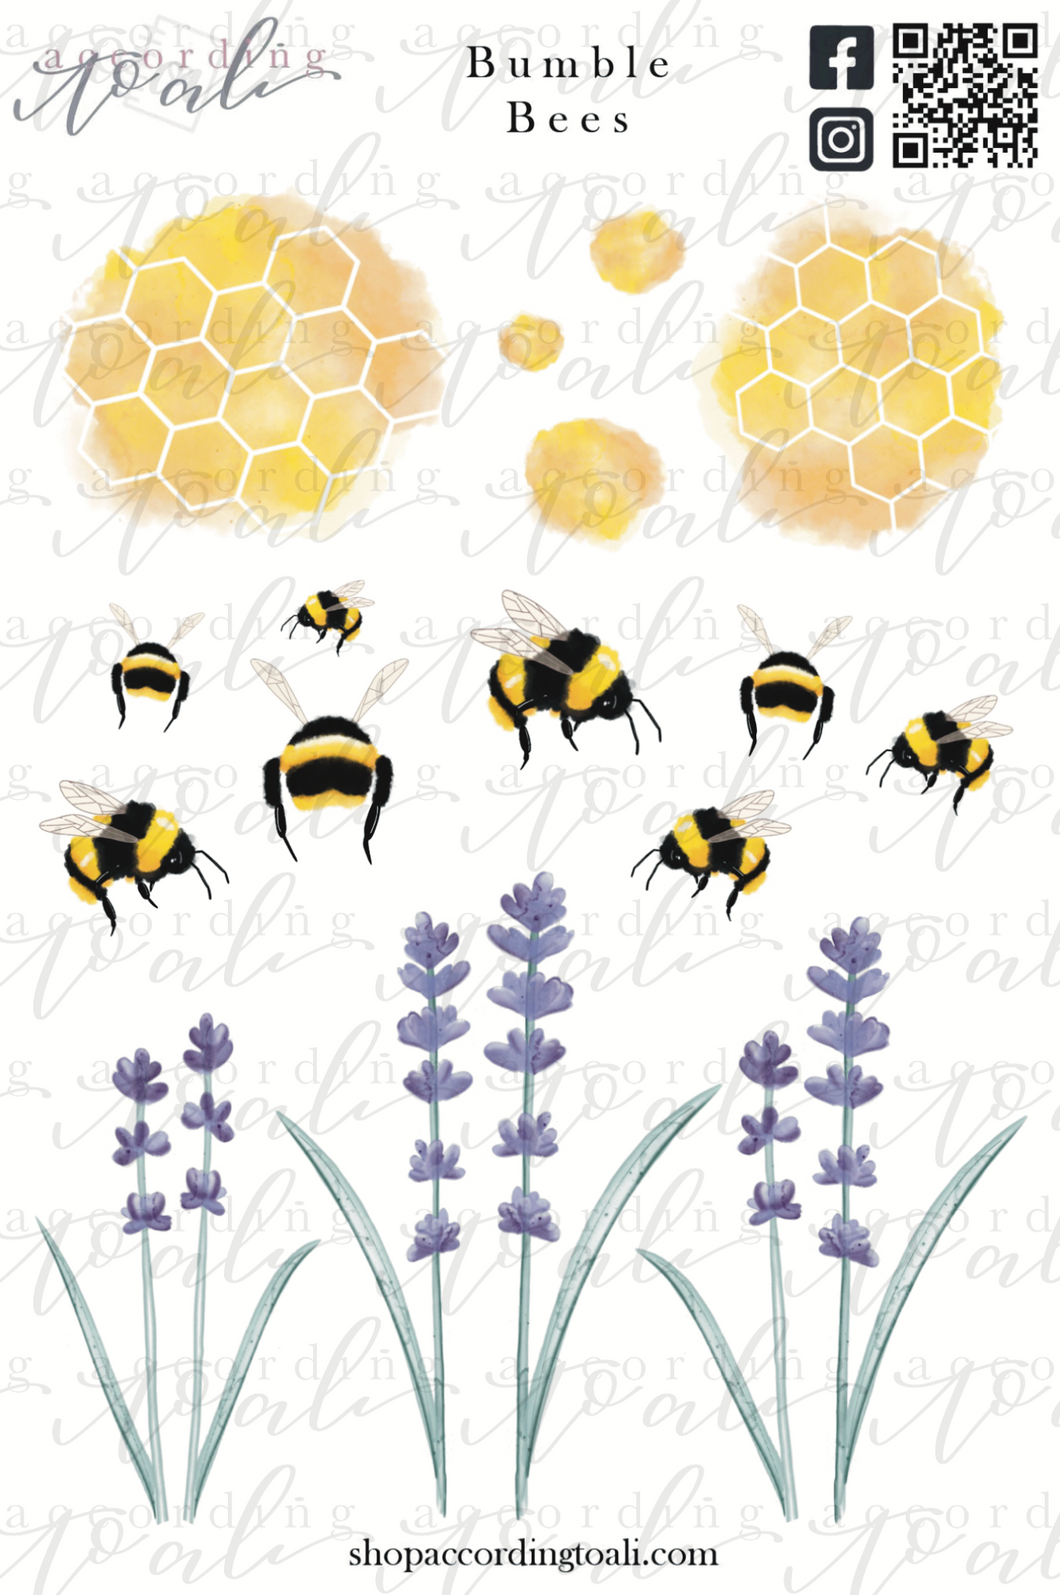 Bumble Bees Sticker Sheet